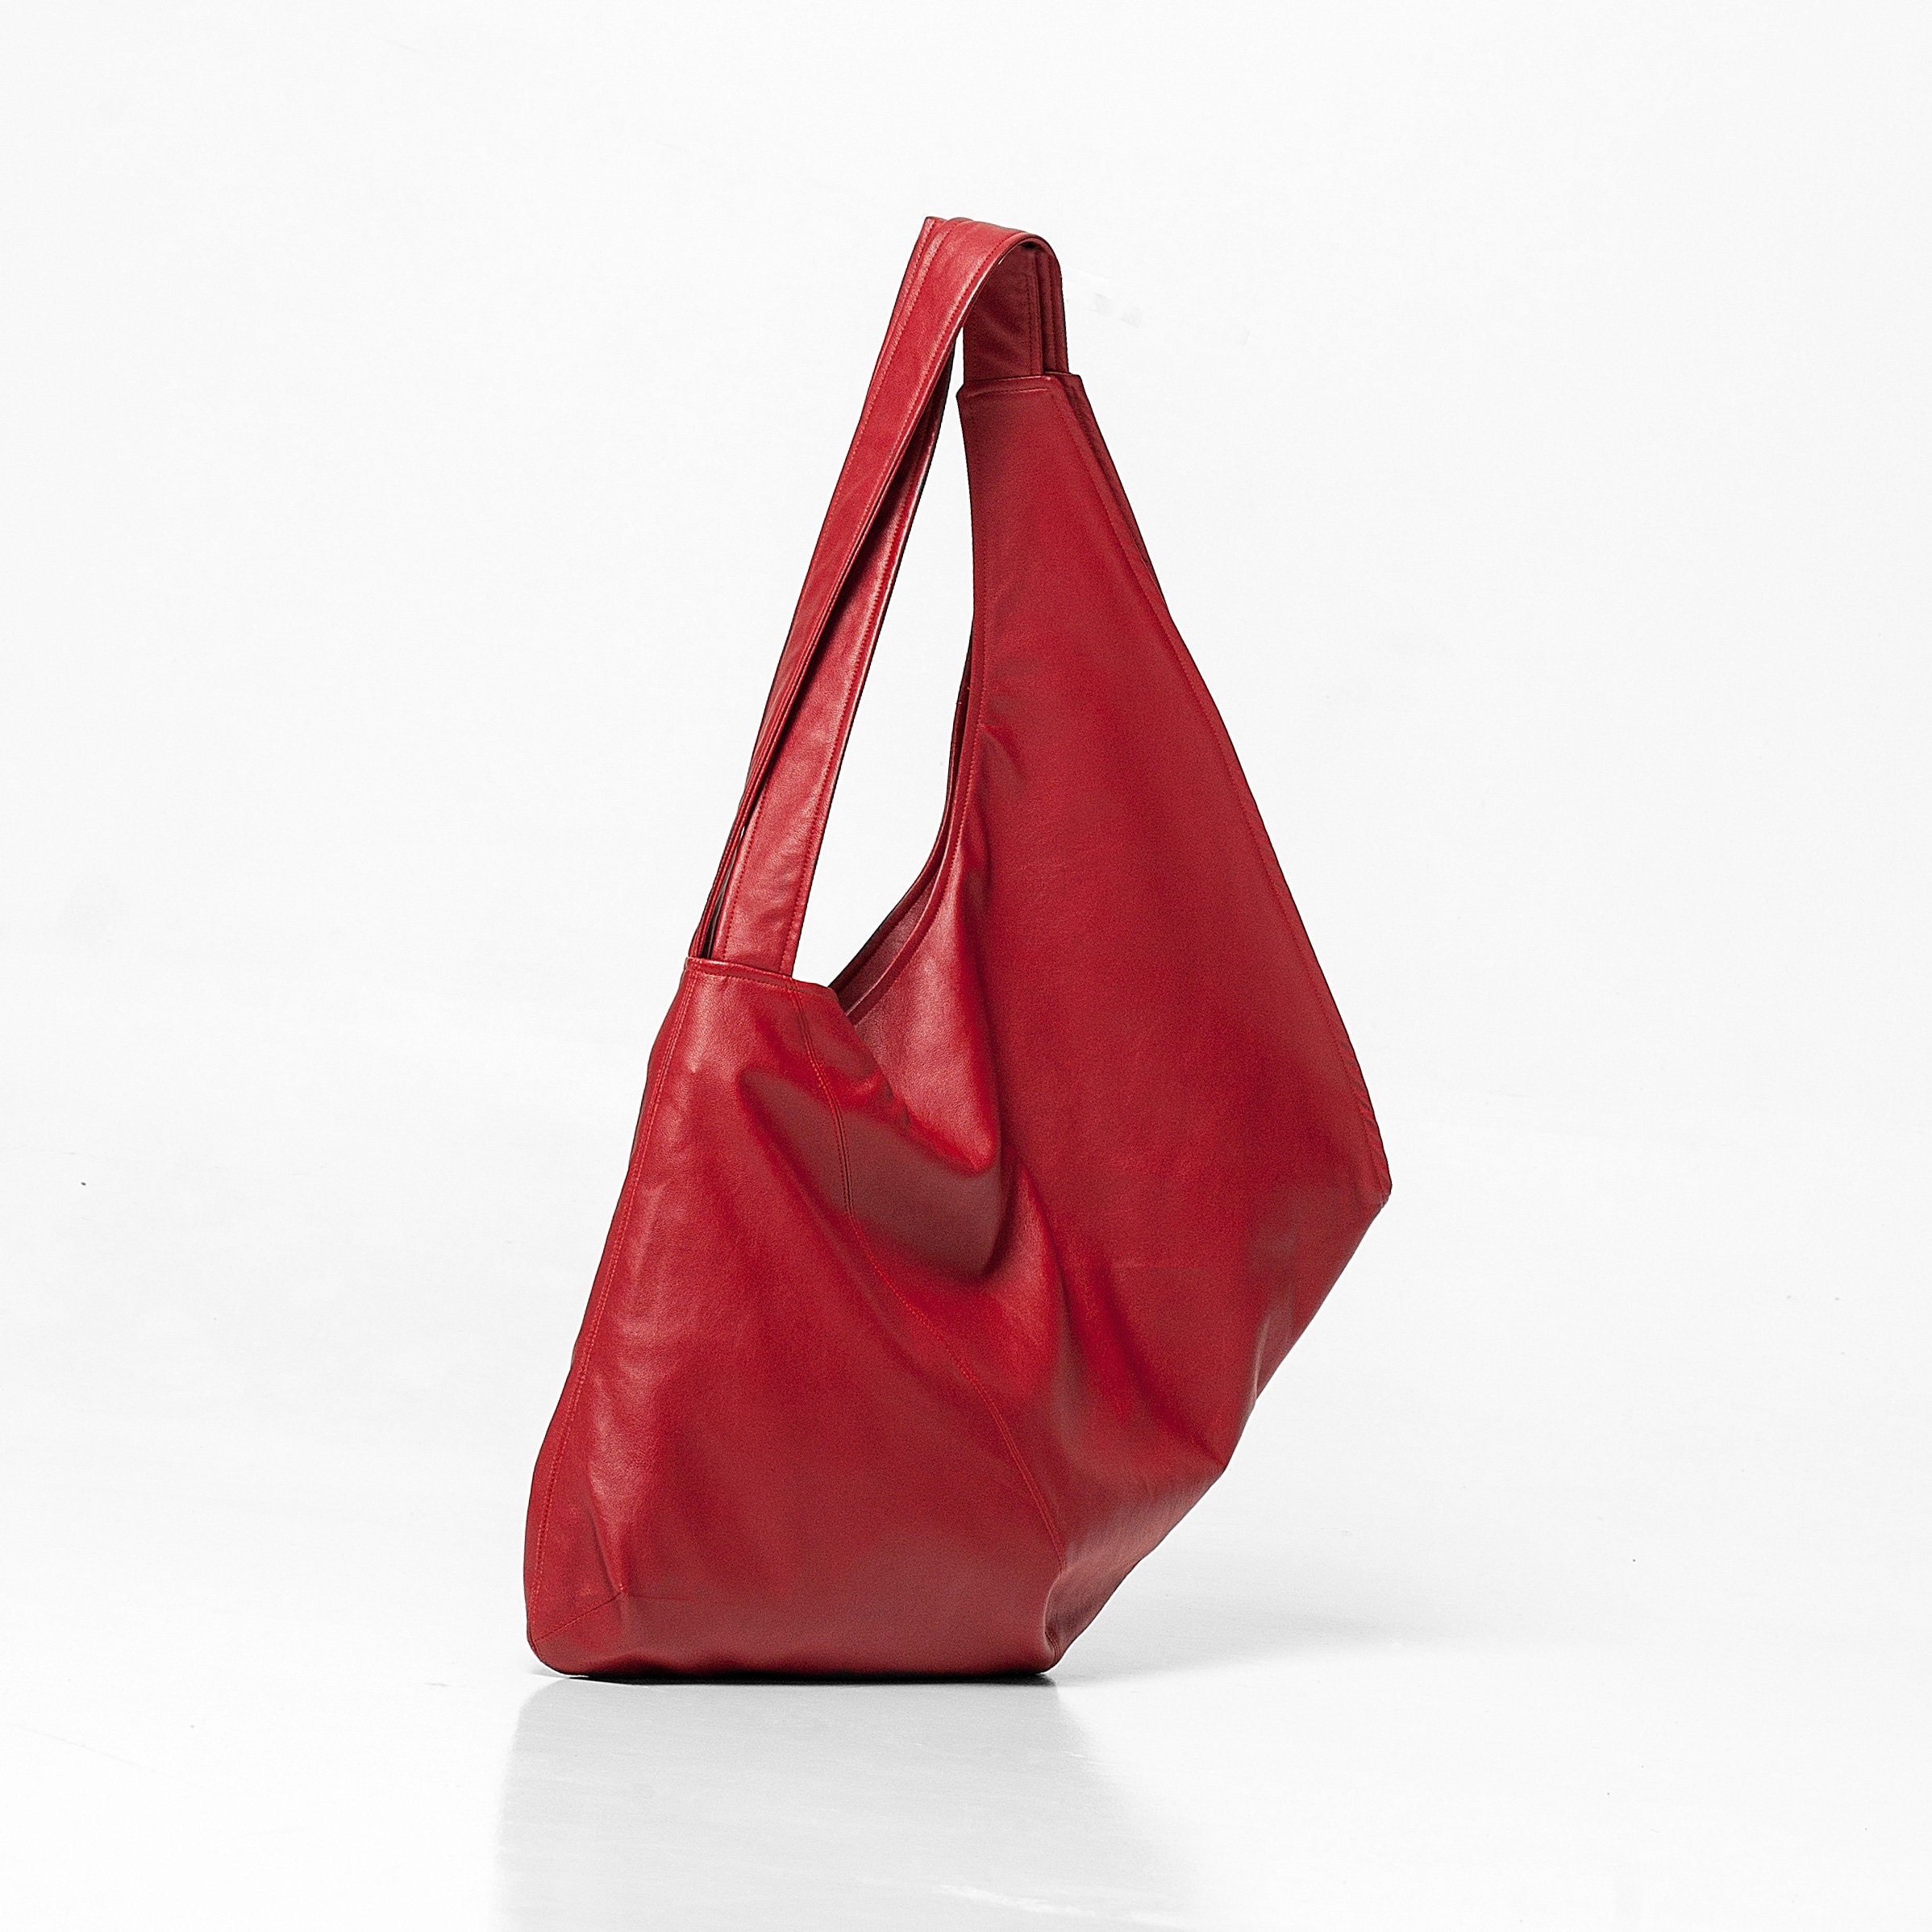 Red Vegan Leather Bag Large Hobo Handbag Shoulder Bag | Etsy